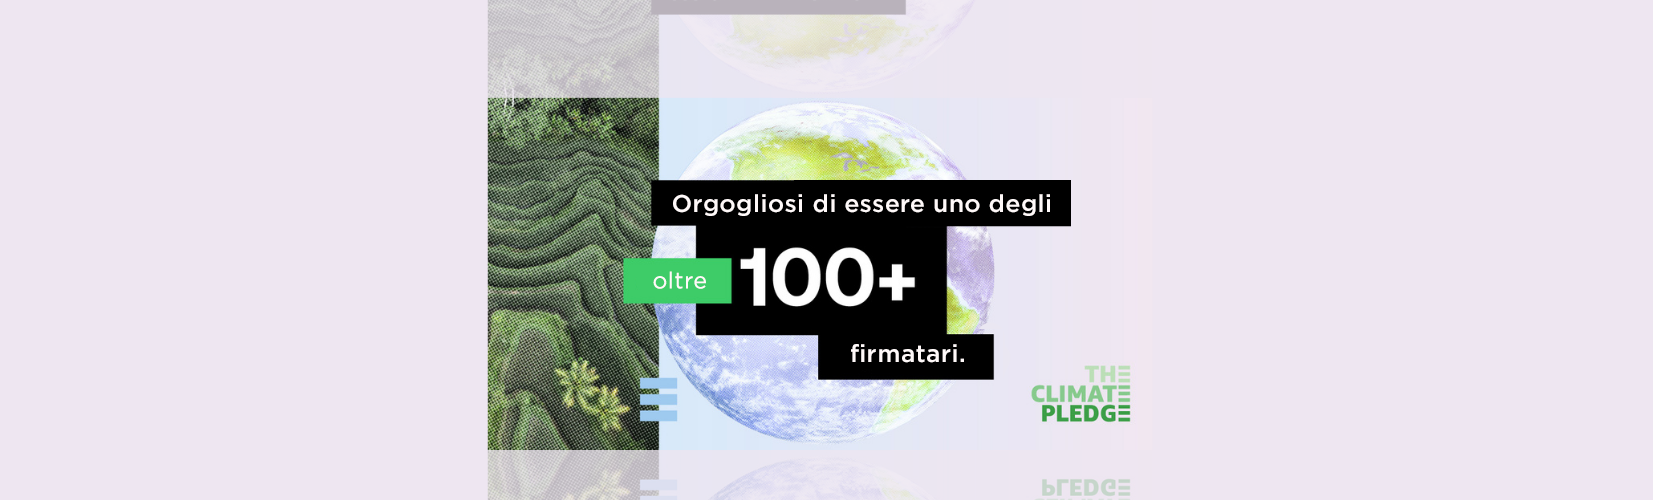 The Climate Pledge - Oltre 100 firmatari